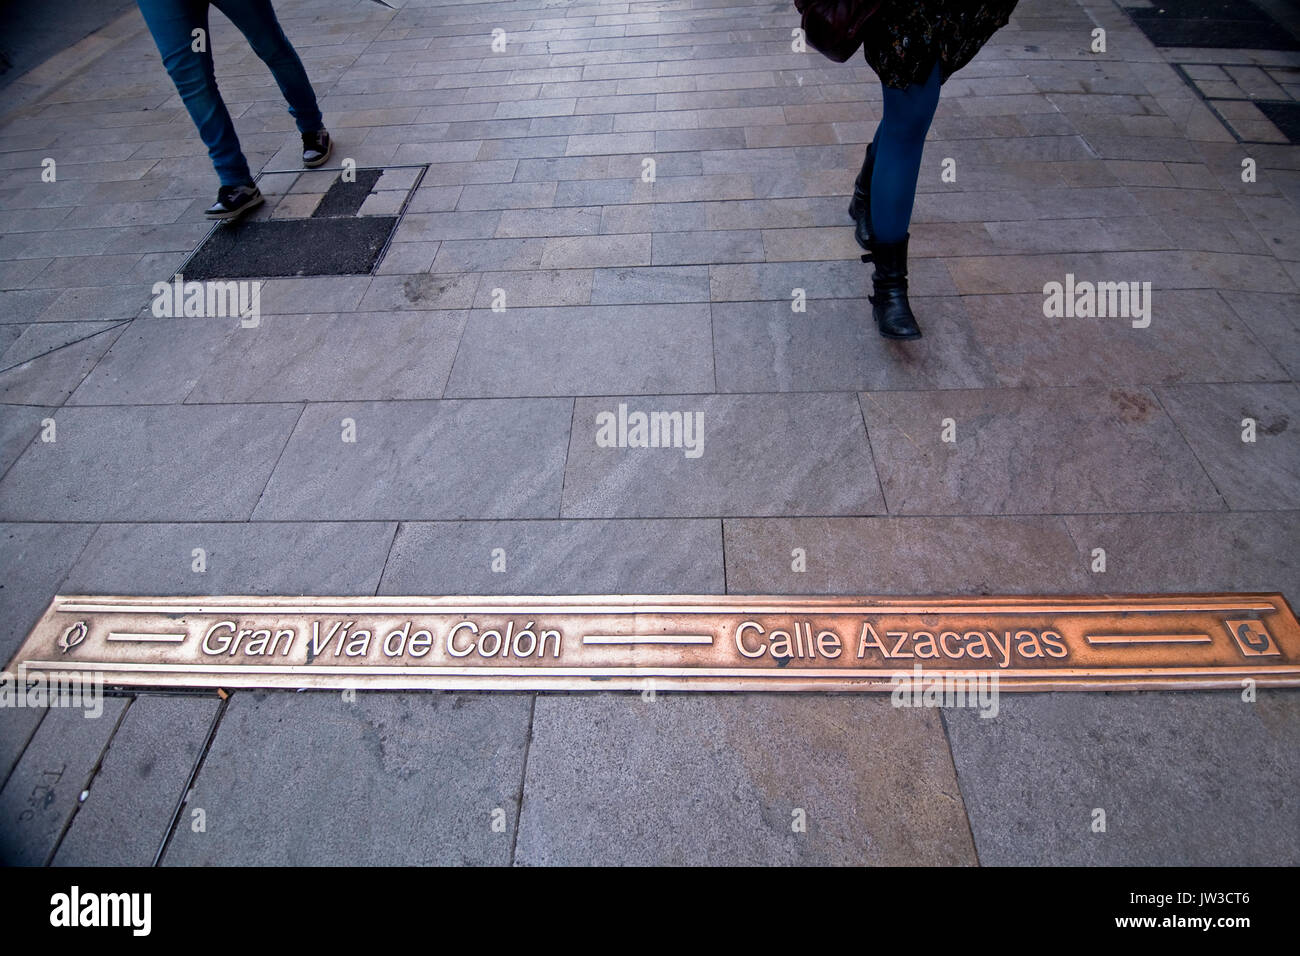 Indicazione del bronzo nel terreno indica nome della strada Prependicular alla croce di strade di Granada, Andalusia, Spagna Foto Stock